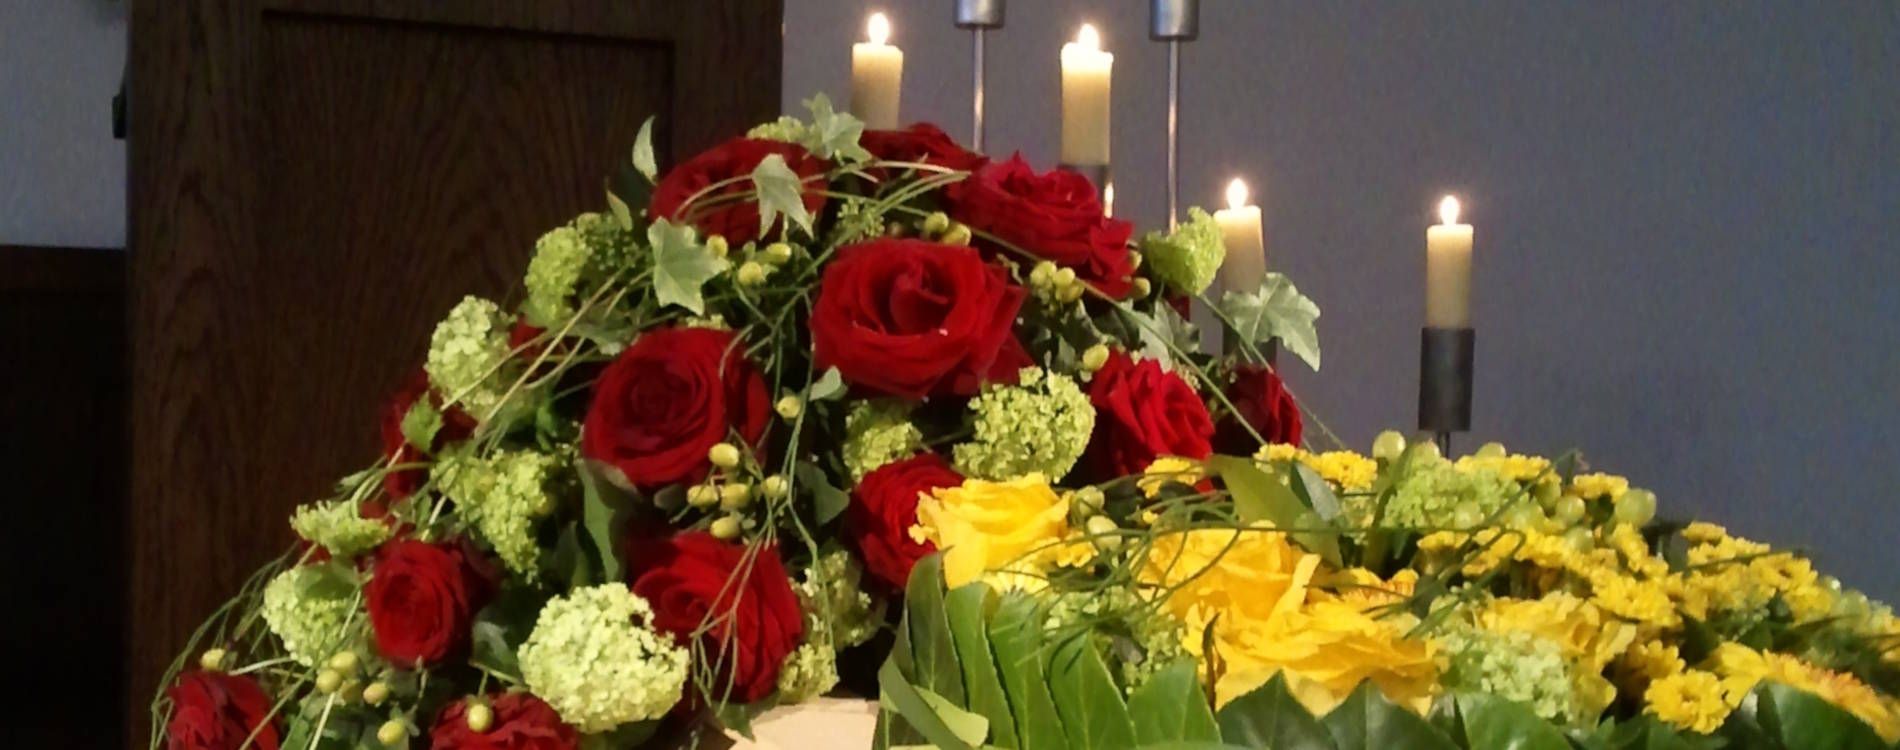 Sargschmuck - Blumenschmuck für eine Trauerfeier